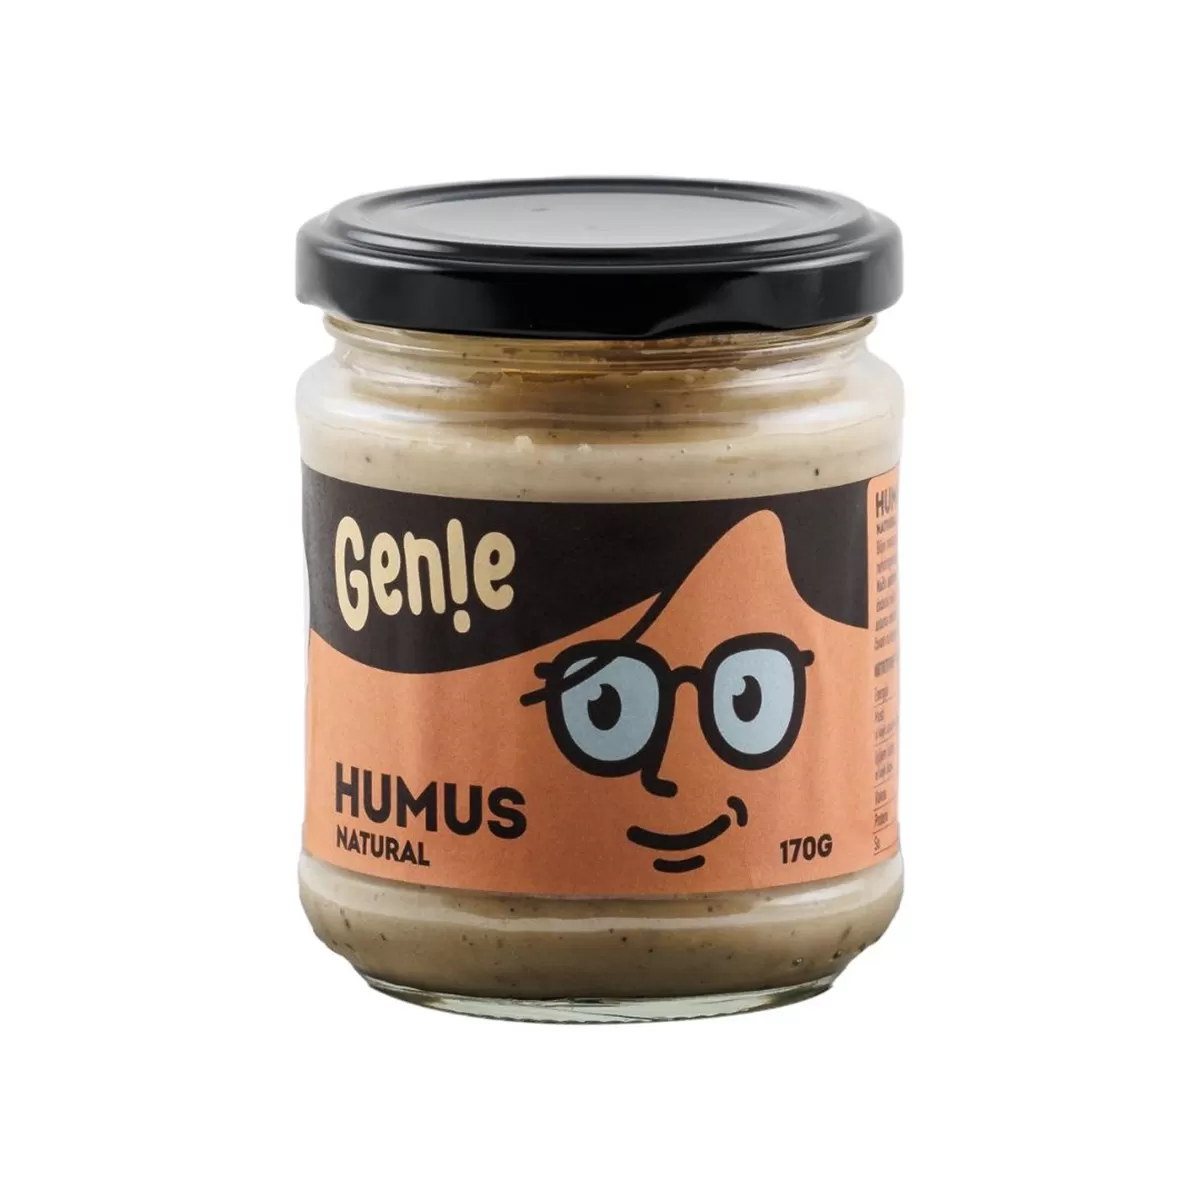 Genie humus namaz natural 170g 